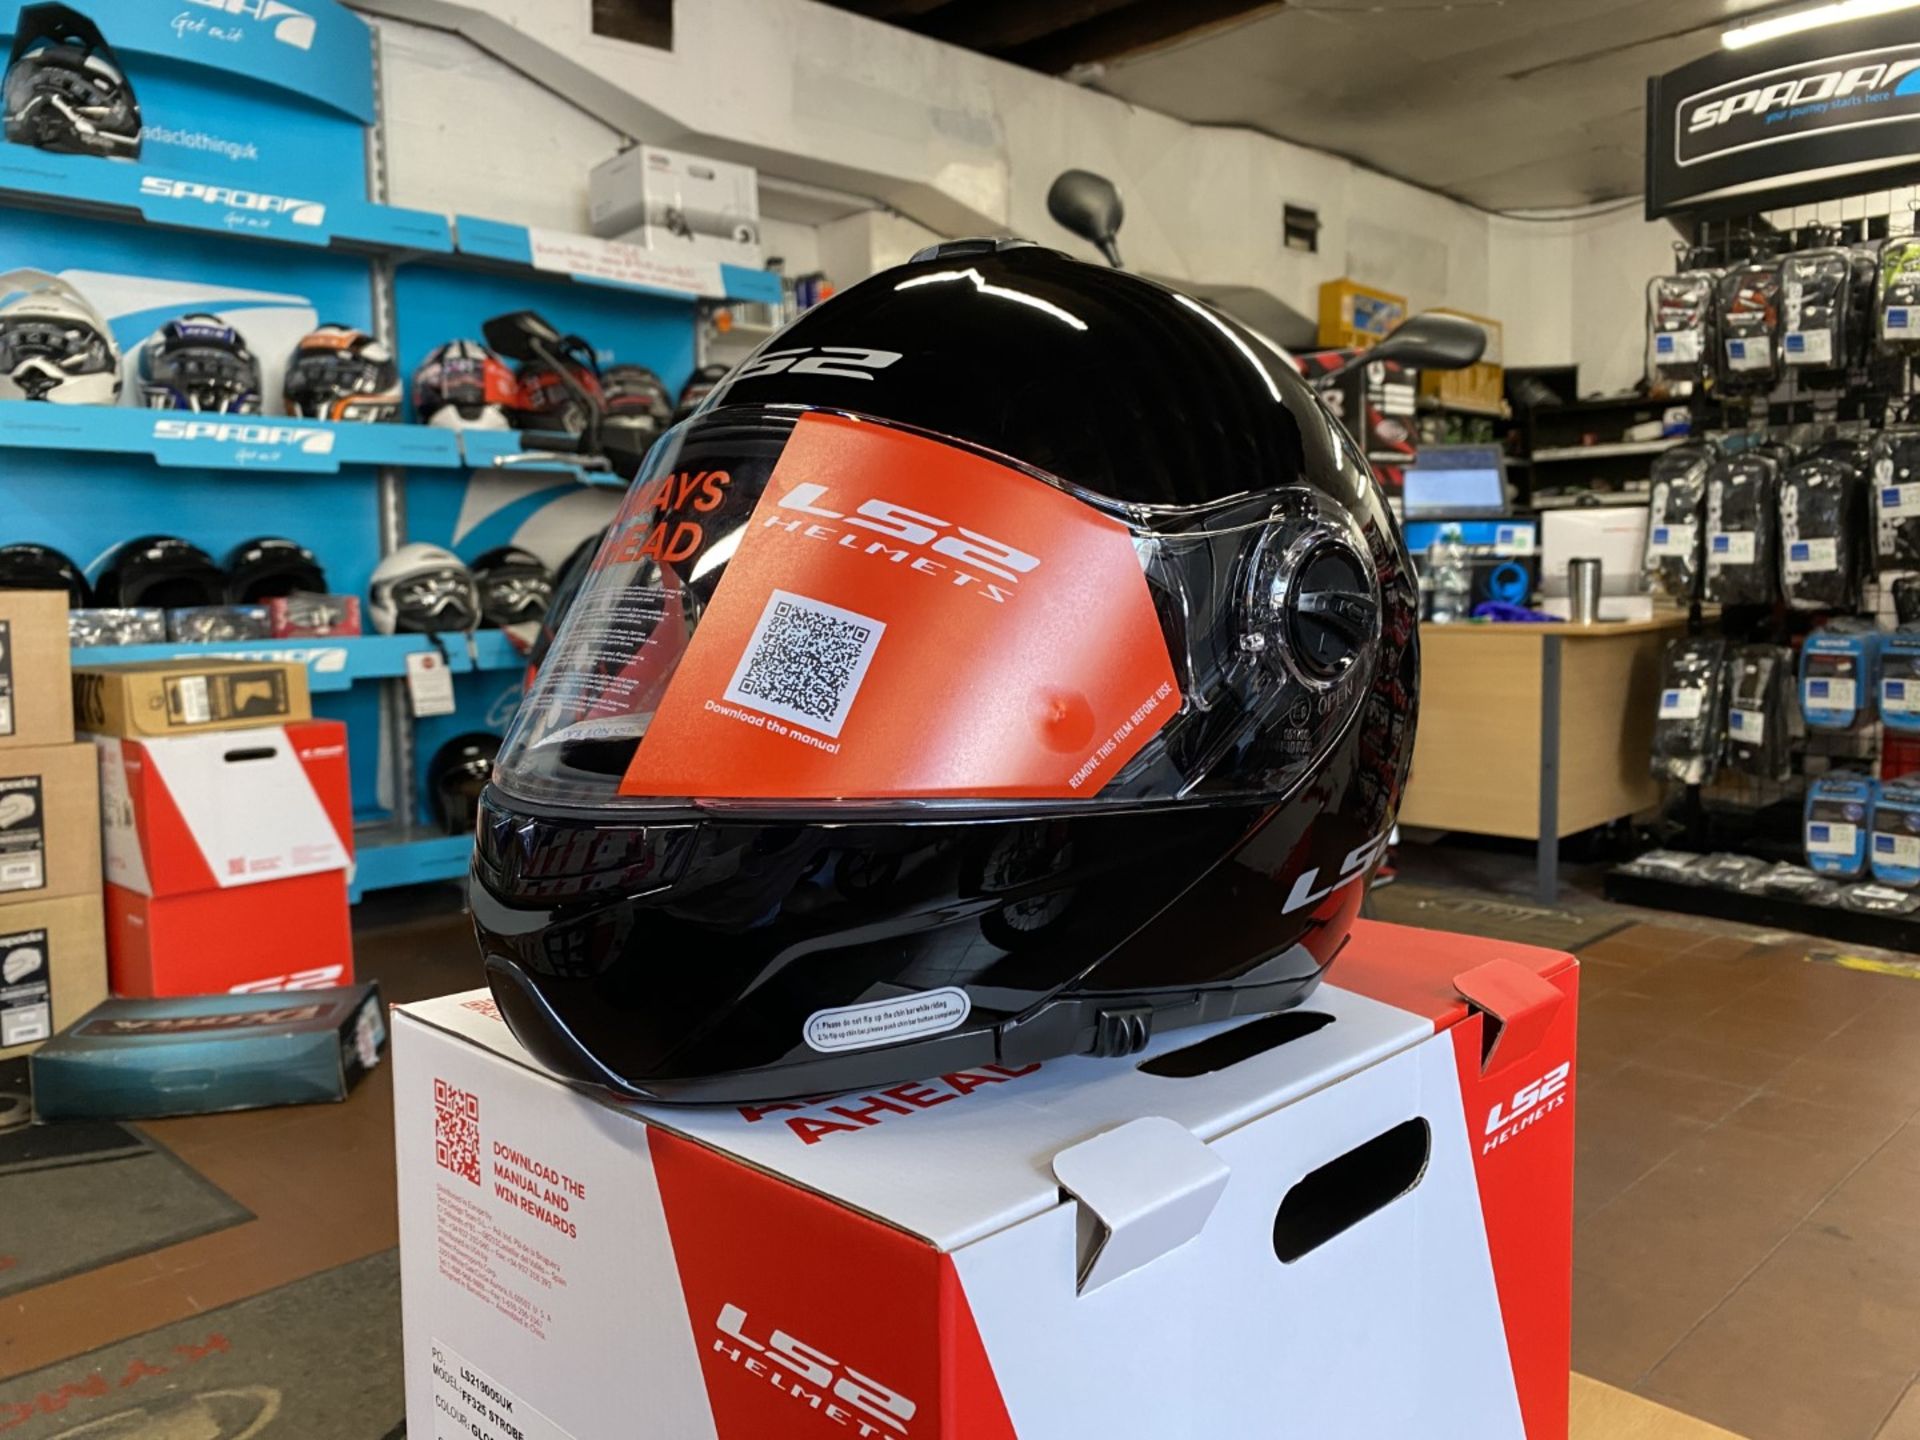 LS2 FF325 Strobe Helmet Gloss Black X-Large - LS2 Helmets - Motorcycle / Motorbike Helmet - RRP £80. - Image 2 of 5